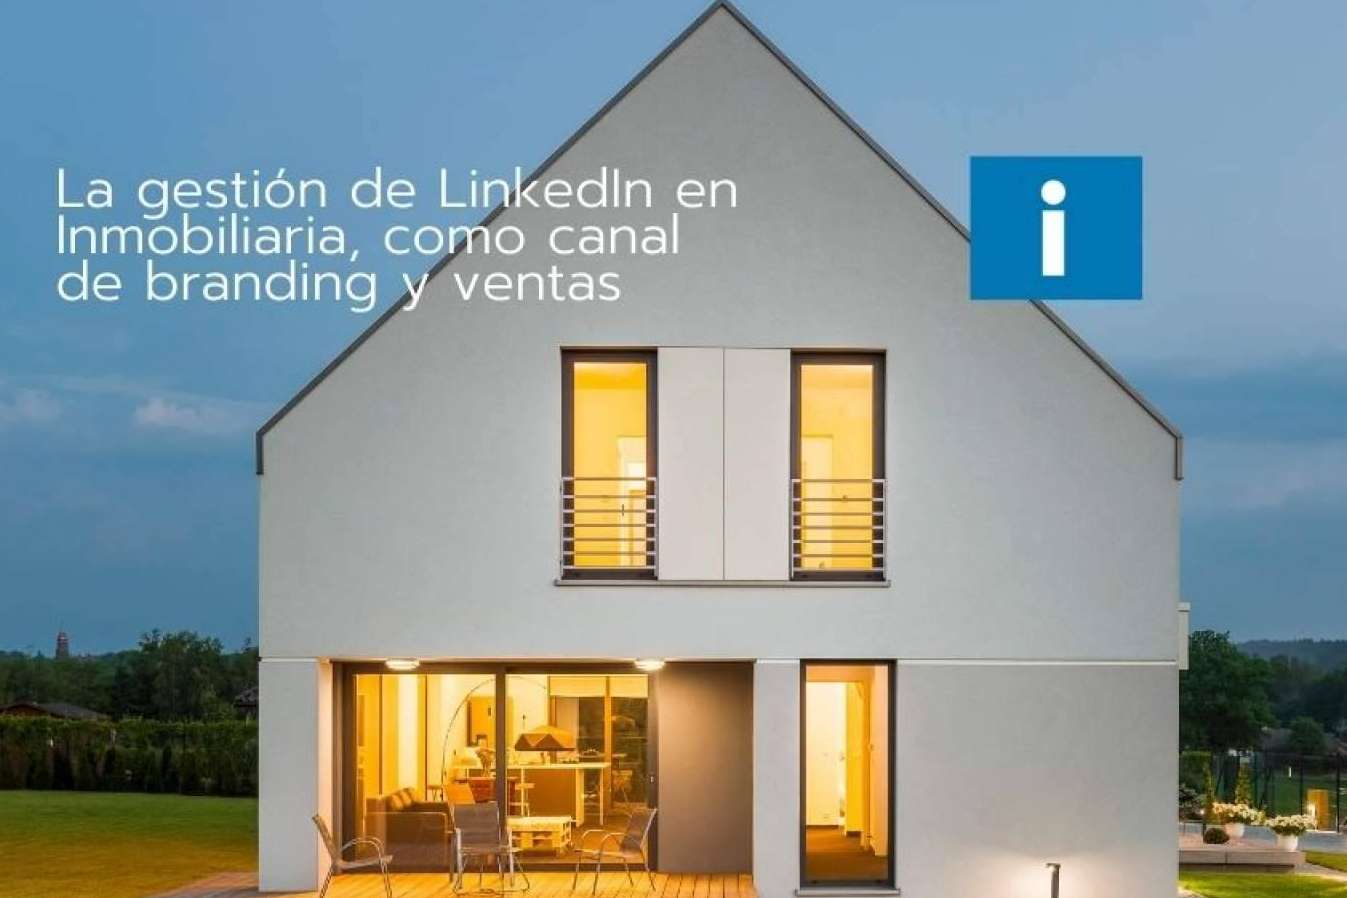 La gestión de LinkedIn en Inmobiliaria, como canal de branding y ventas